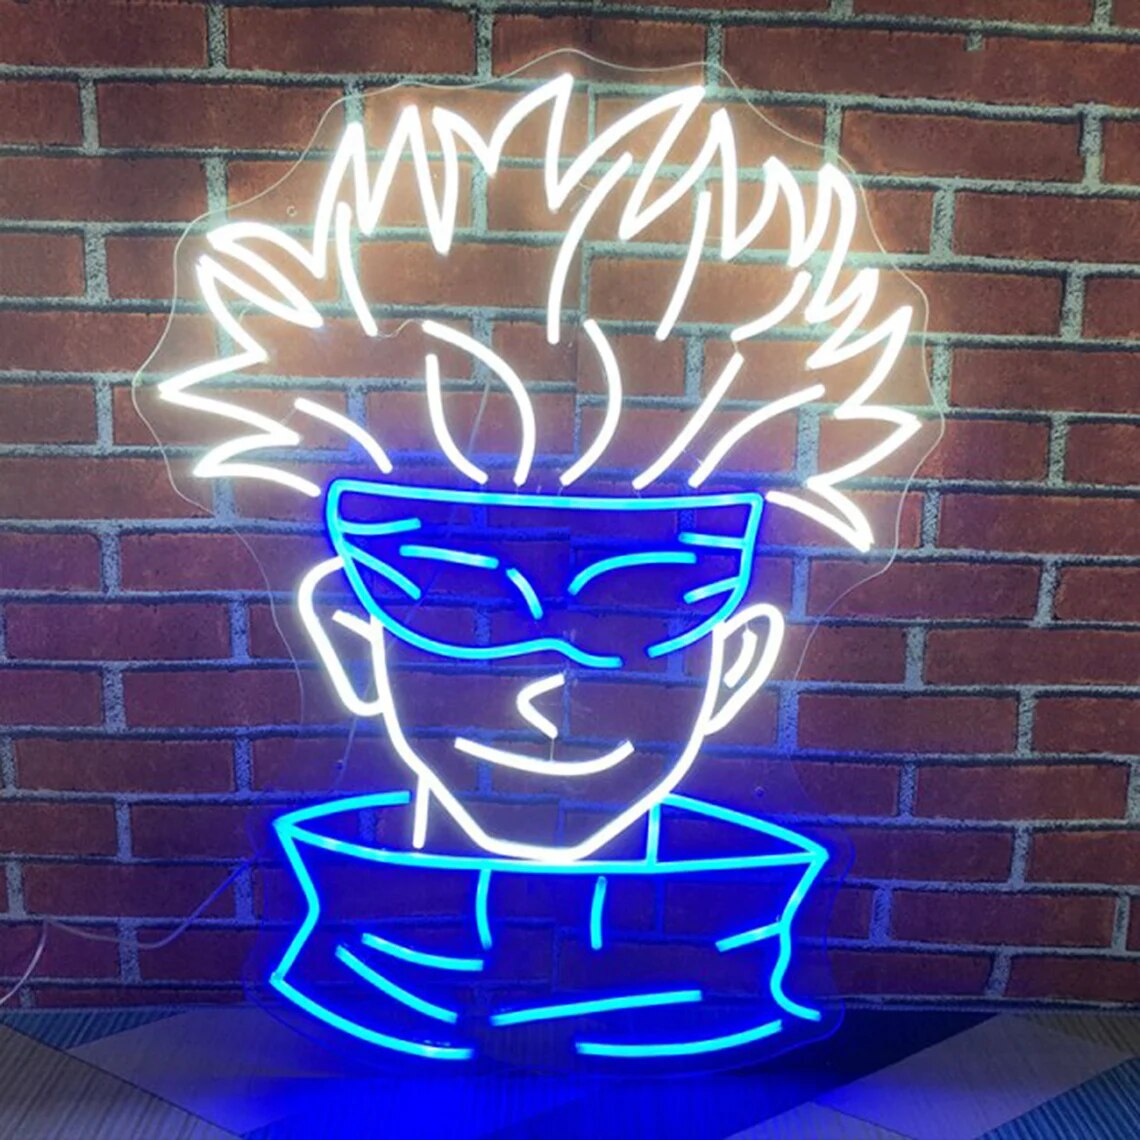 Anime Neon light Sign LED